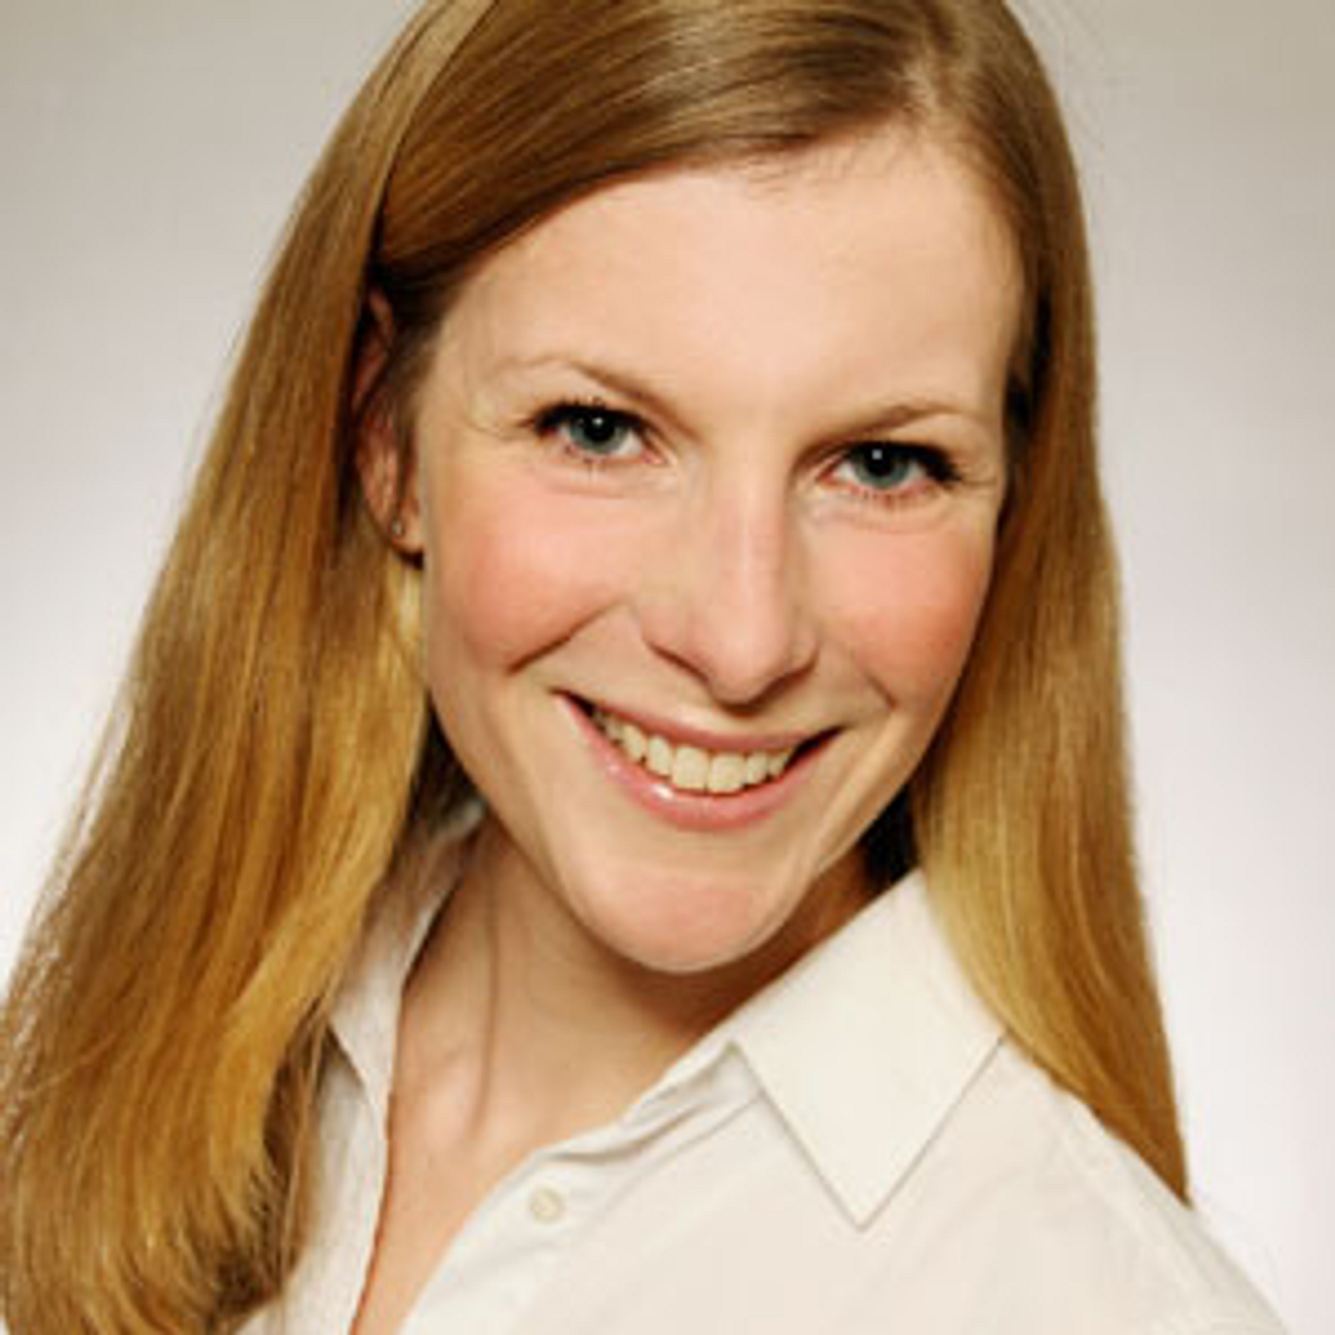 Kinderärztin Dr. Nadine Hess ist Expertin für Impfungen